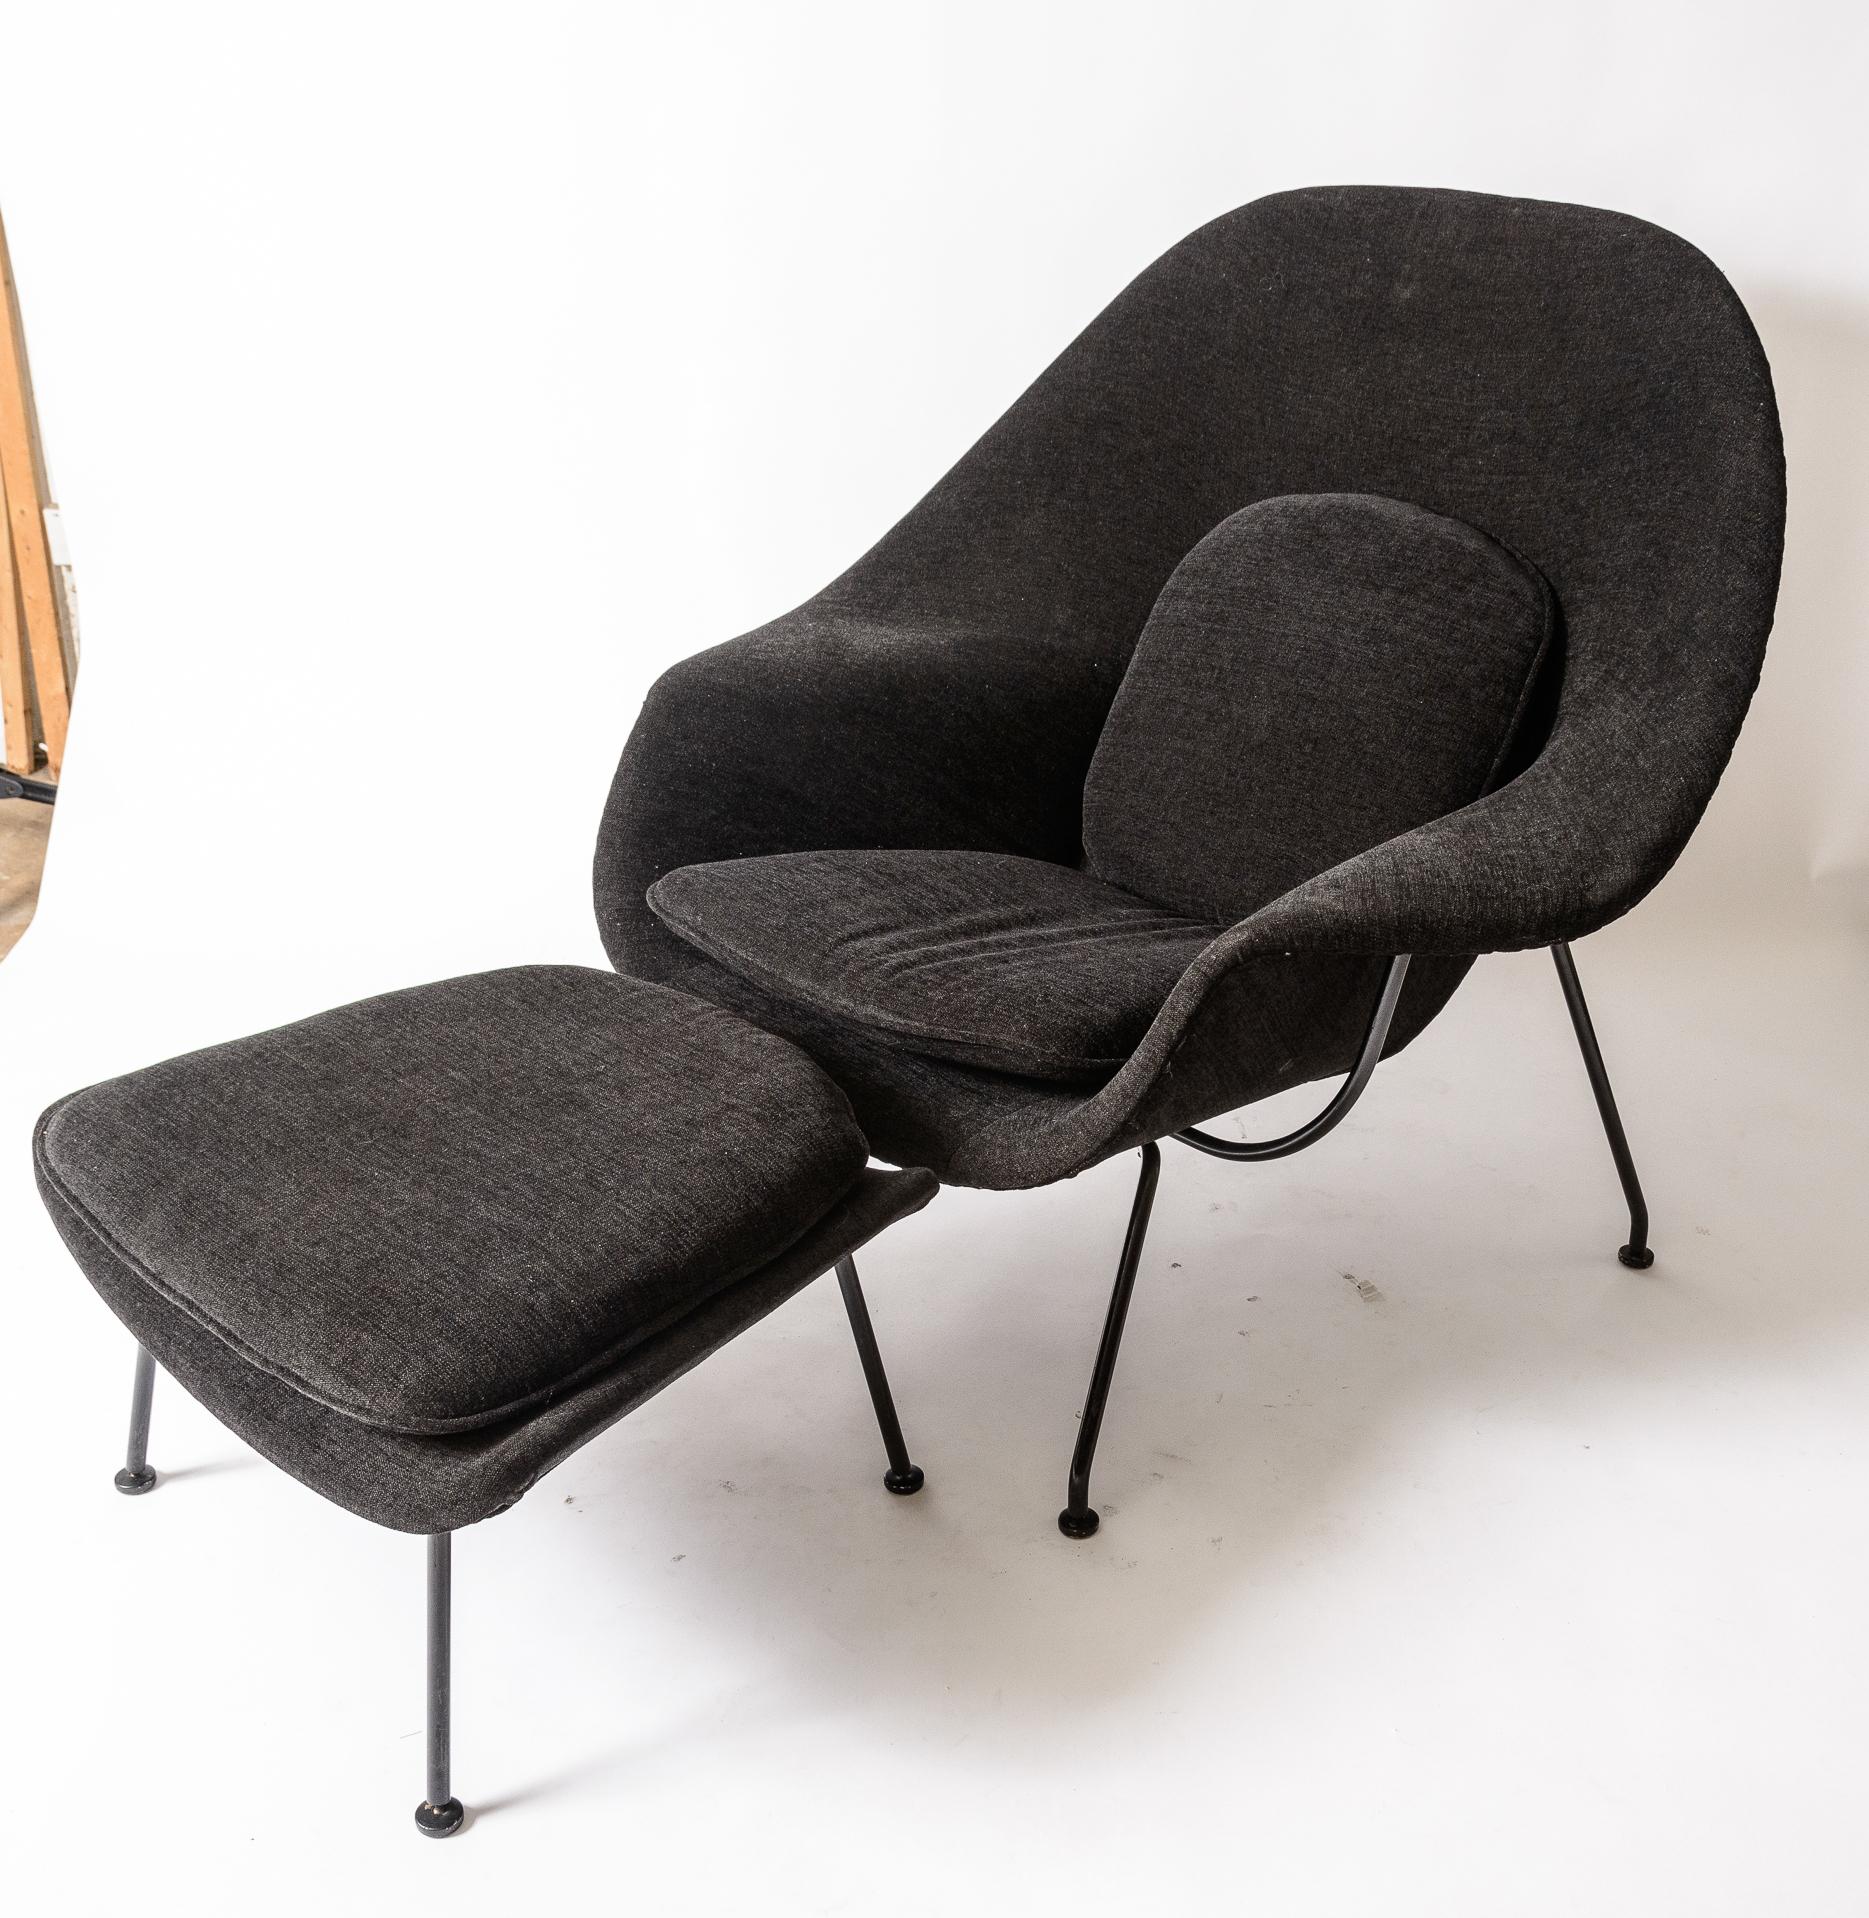 Eero Saarinen Womb Chair und Ottomane
Produktion Ende der 1960er Jahre durch Knoll
 Neu gepolstert
Original schwarzer Emaillierrahmen
Die Farbe des Stoffes ist schwarz mit grauen Untertönen, die 
letztes Foto, ich habe ein graues und schwarzes